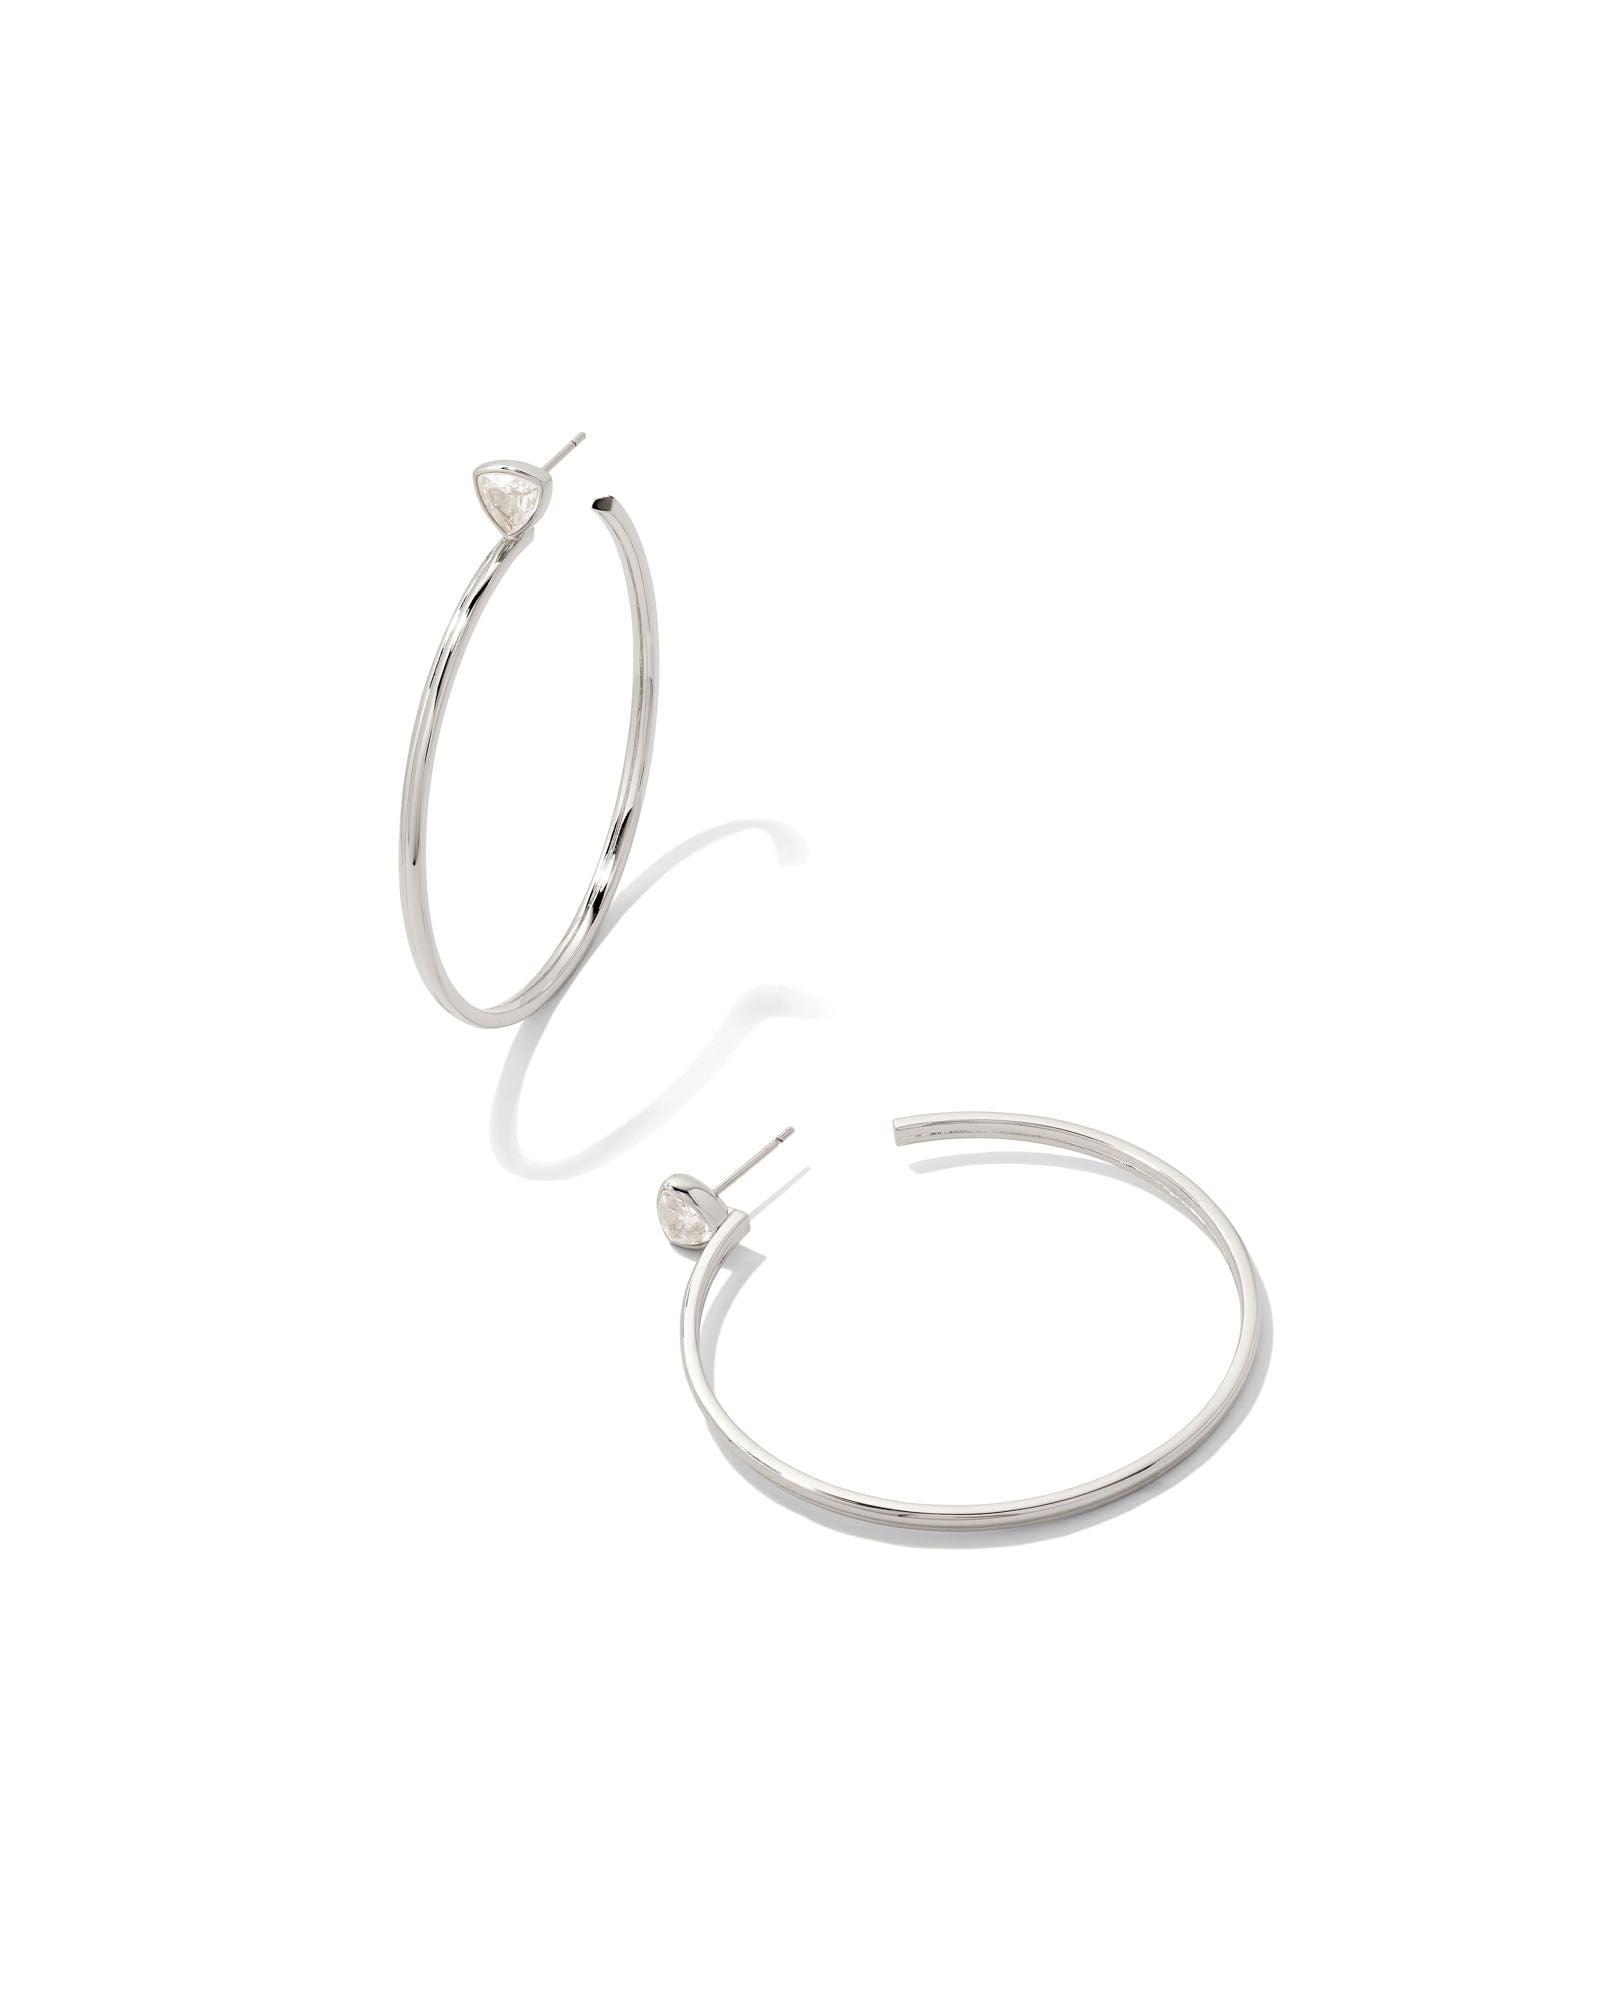 Kendra Scott Arden Hoop Earrings Rhodium White Crystal-Earrings-Kendra Scott-E1957RHD-The Twisted Chandelier